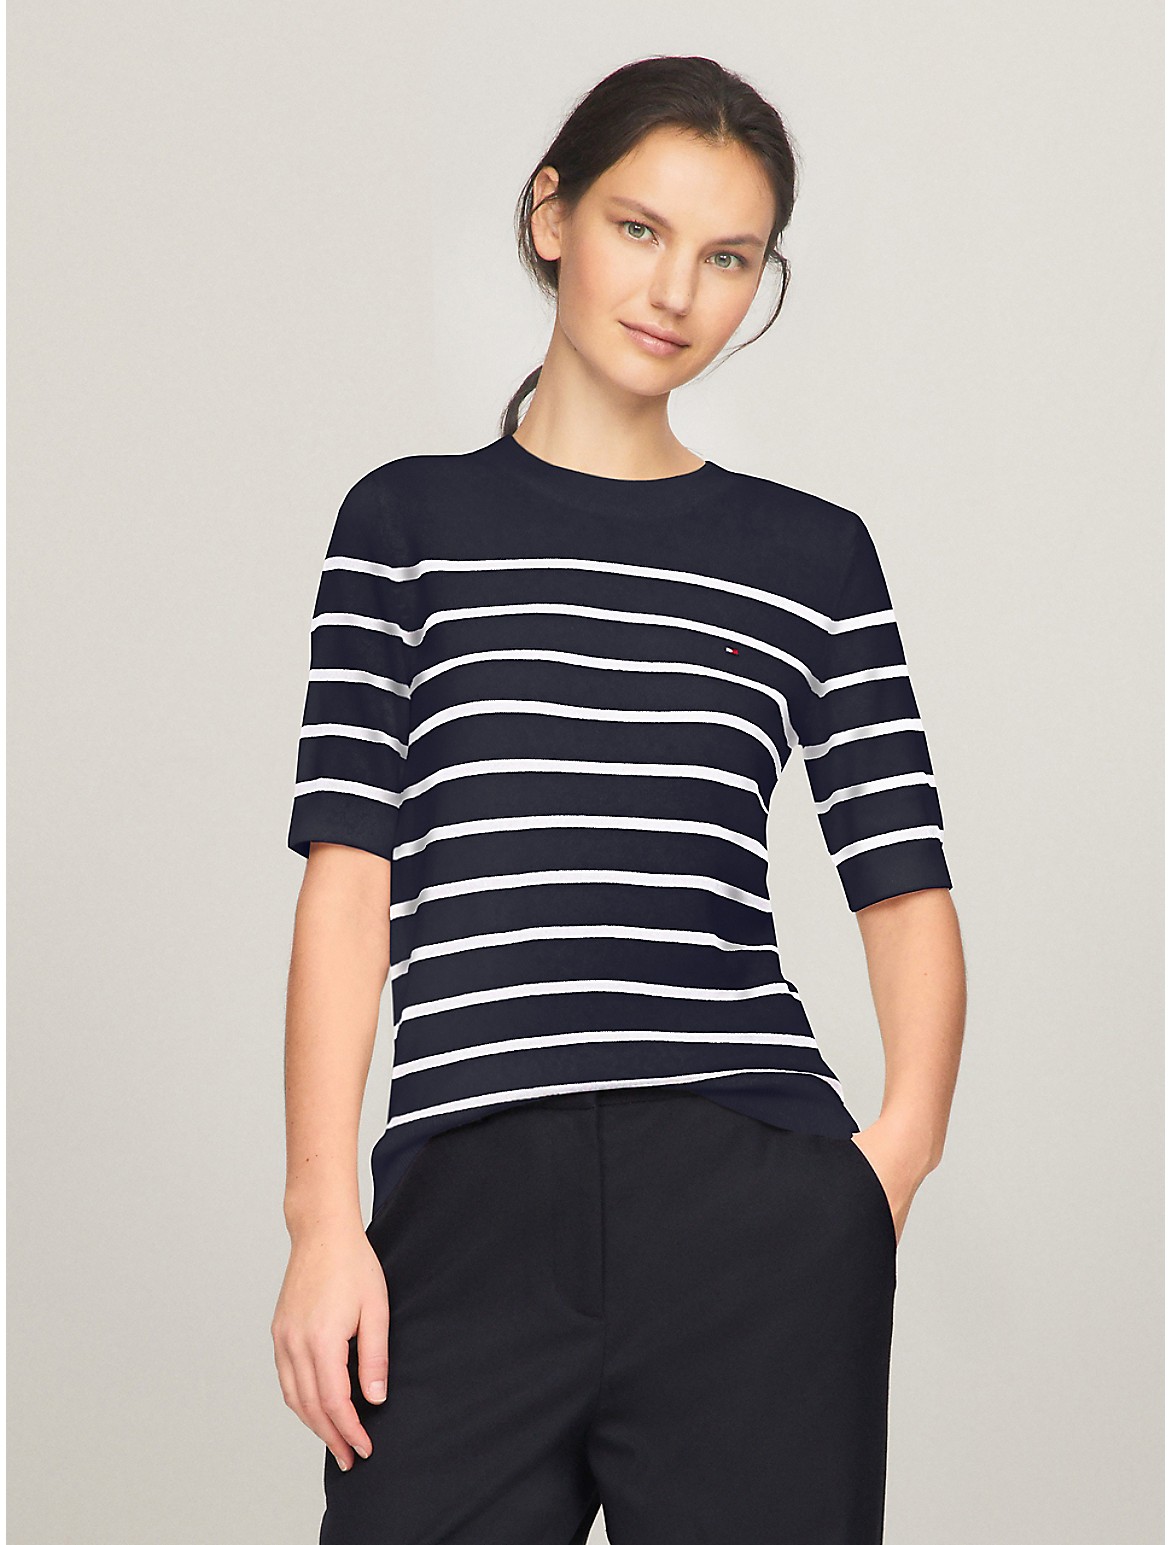 Tommy Hilfiger Women's Short-Sleeve Stripe Sweater